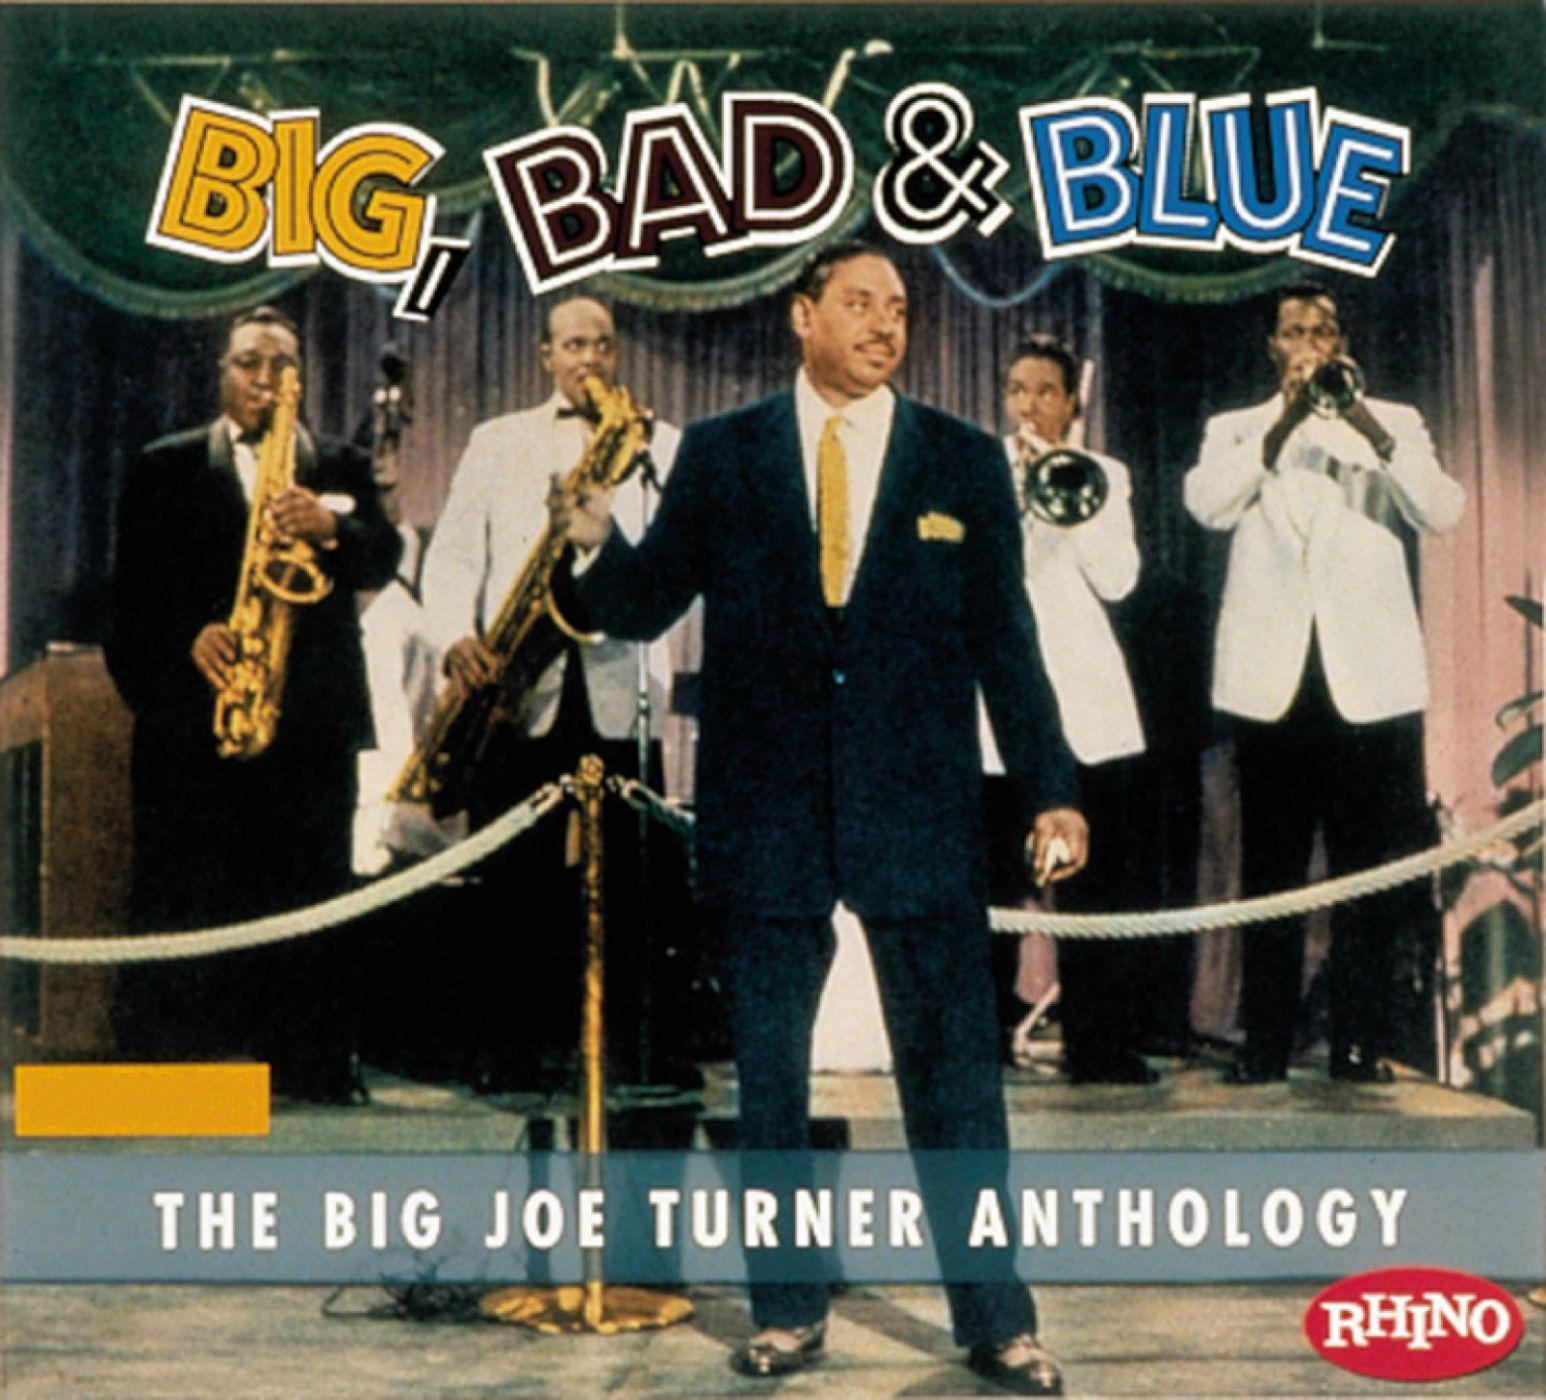 Big Bad & Blue - The Joe Turner Anthology